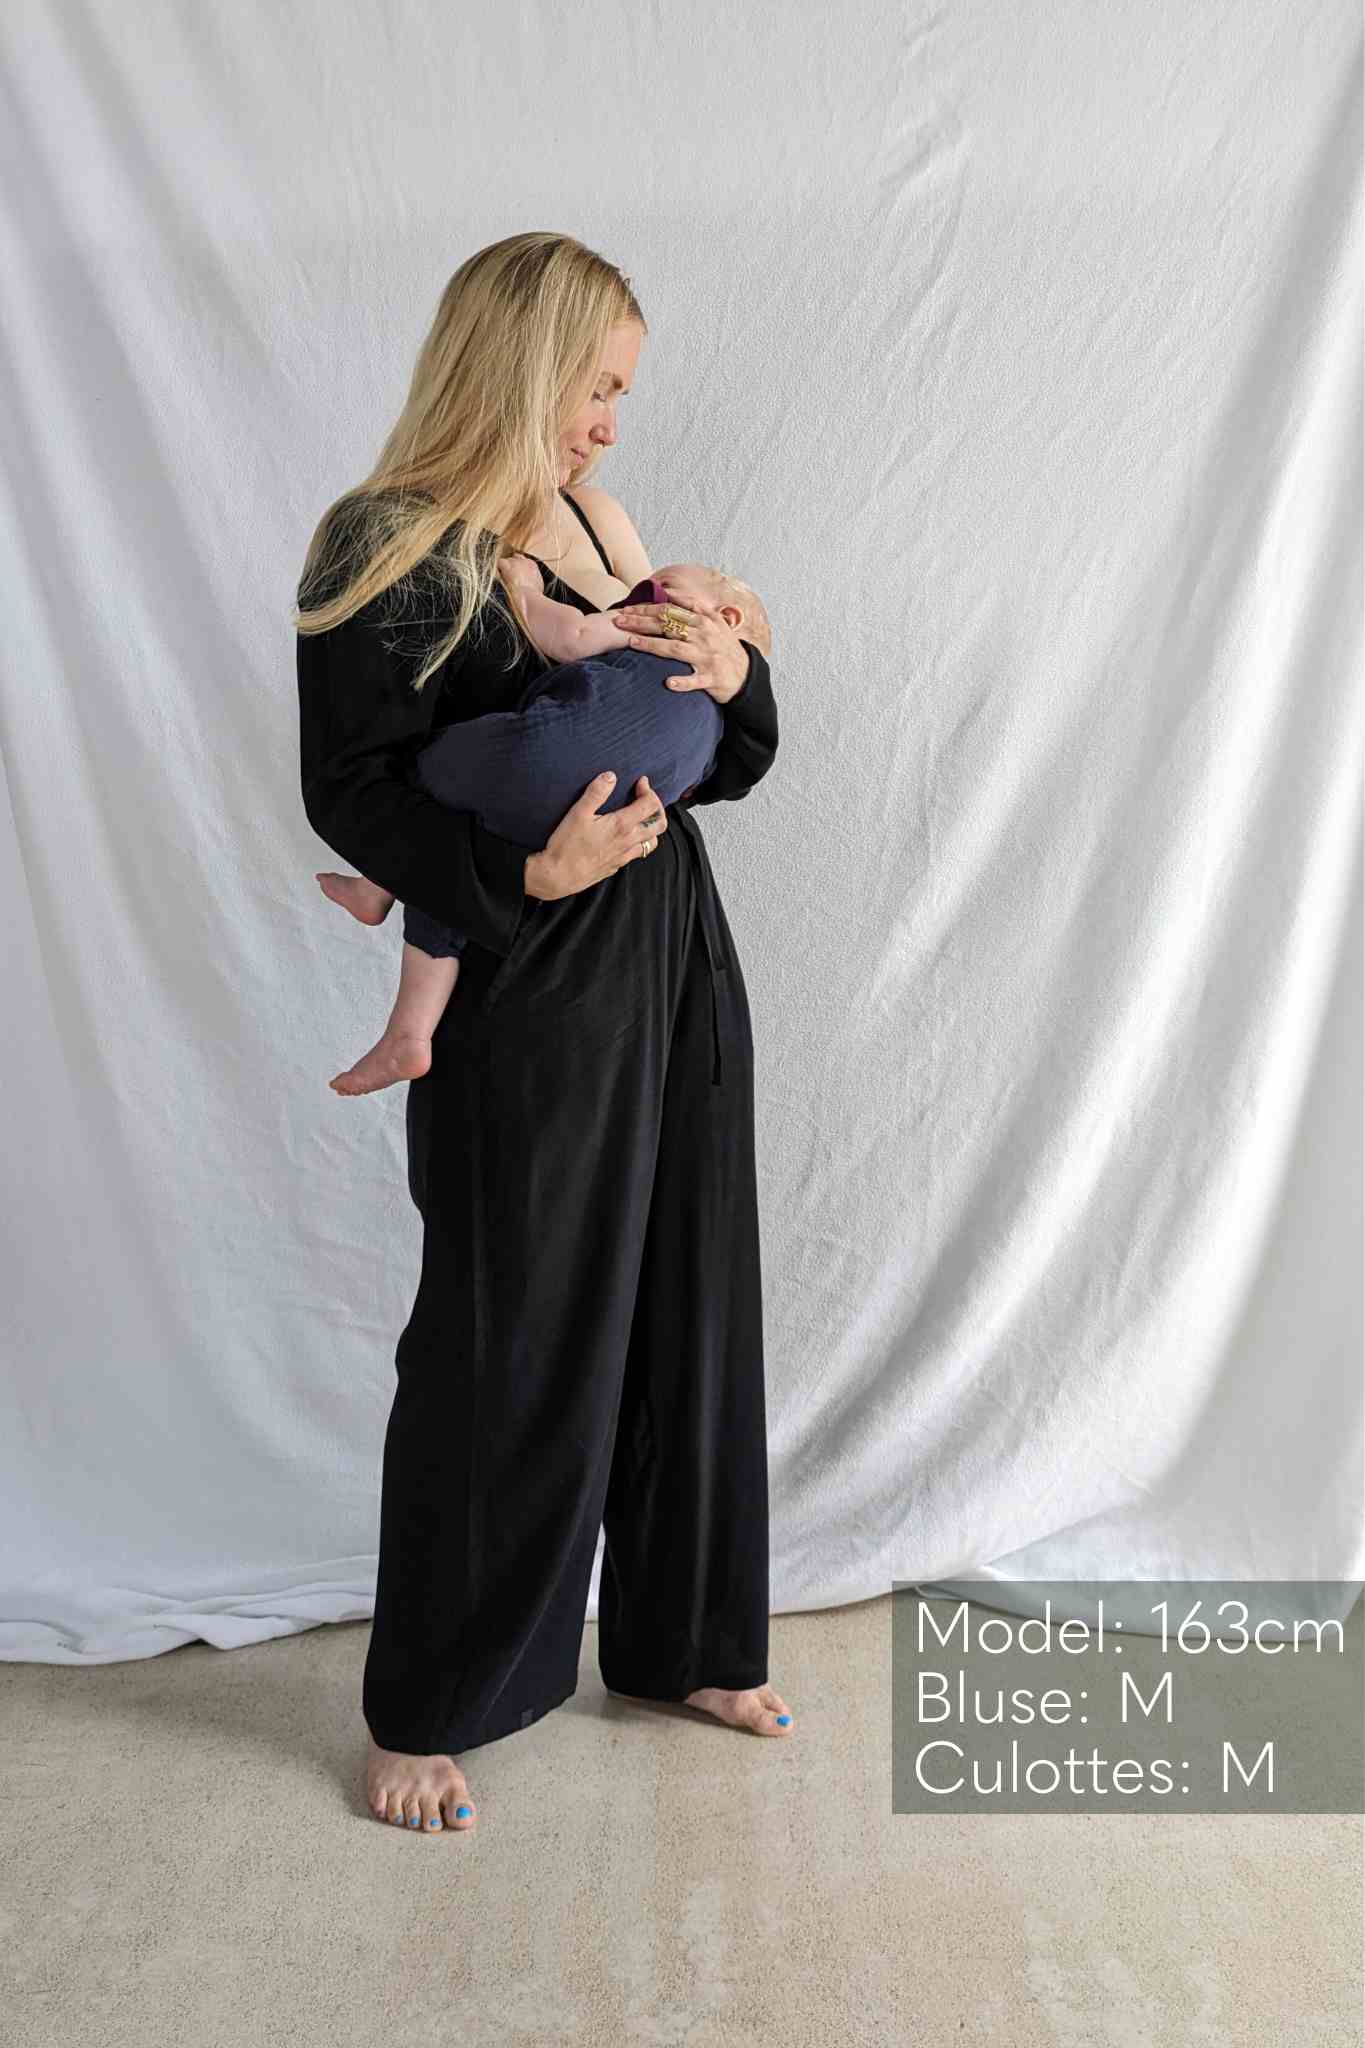 Donna in camicetta nera e culottes porta in braccio un bambino.